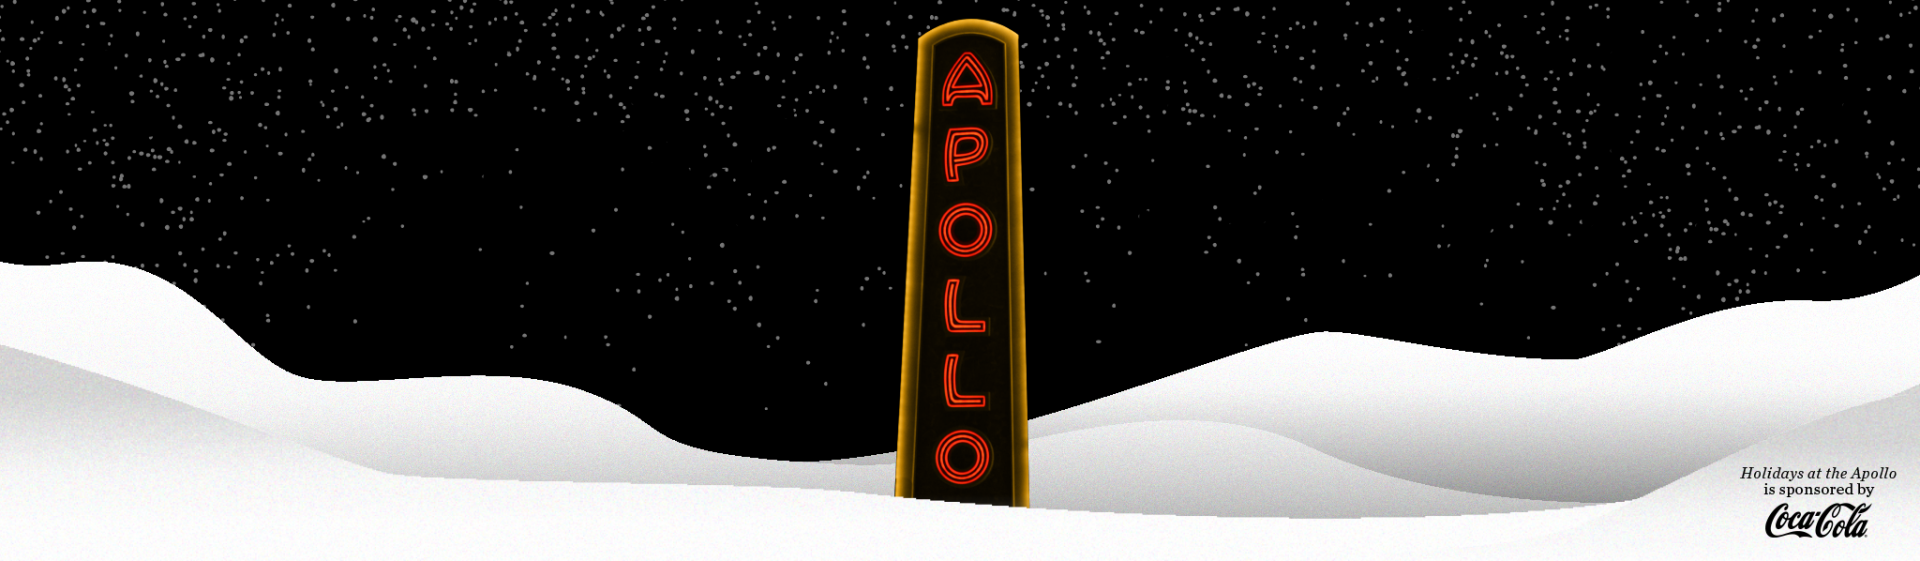 ApolloHolidays_2048x598 (3)